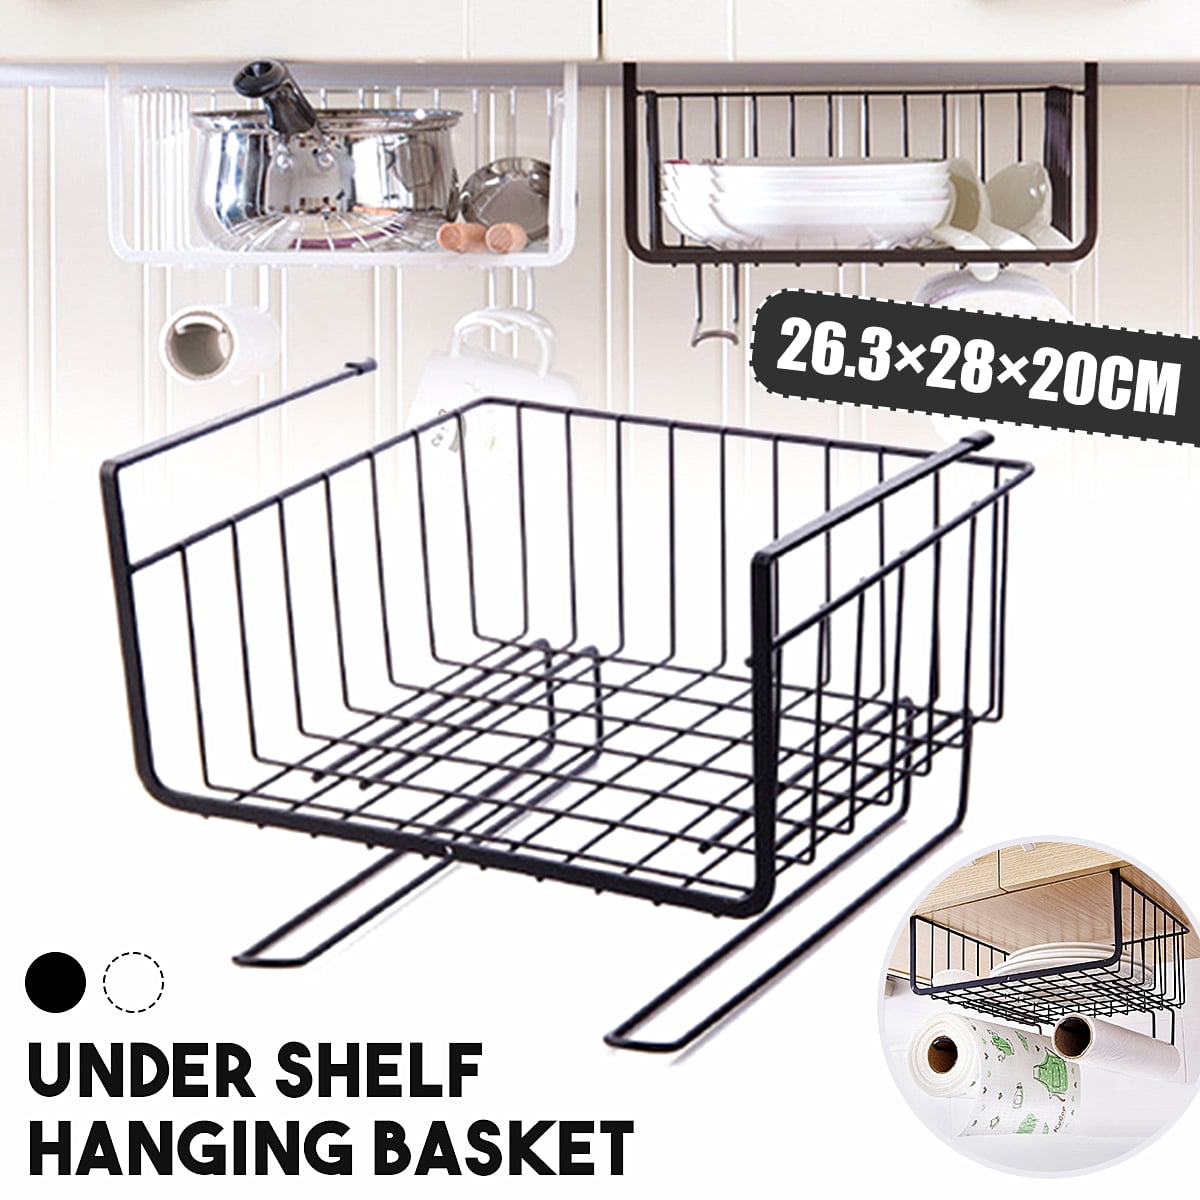 Bathroom Cupboards Black Under Shelf Storage Basket,Under Cabinet Hanging Metal Wire Storage,Under Shelf Basket,Cupboard Shelf Organiser Shelves for Kitchen